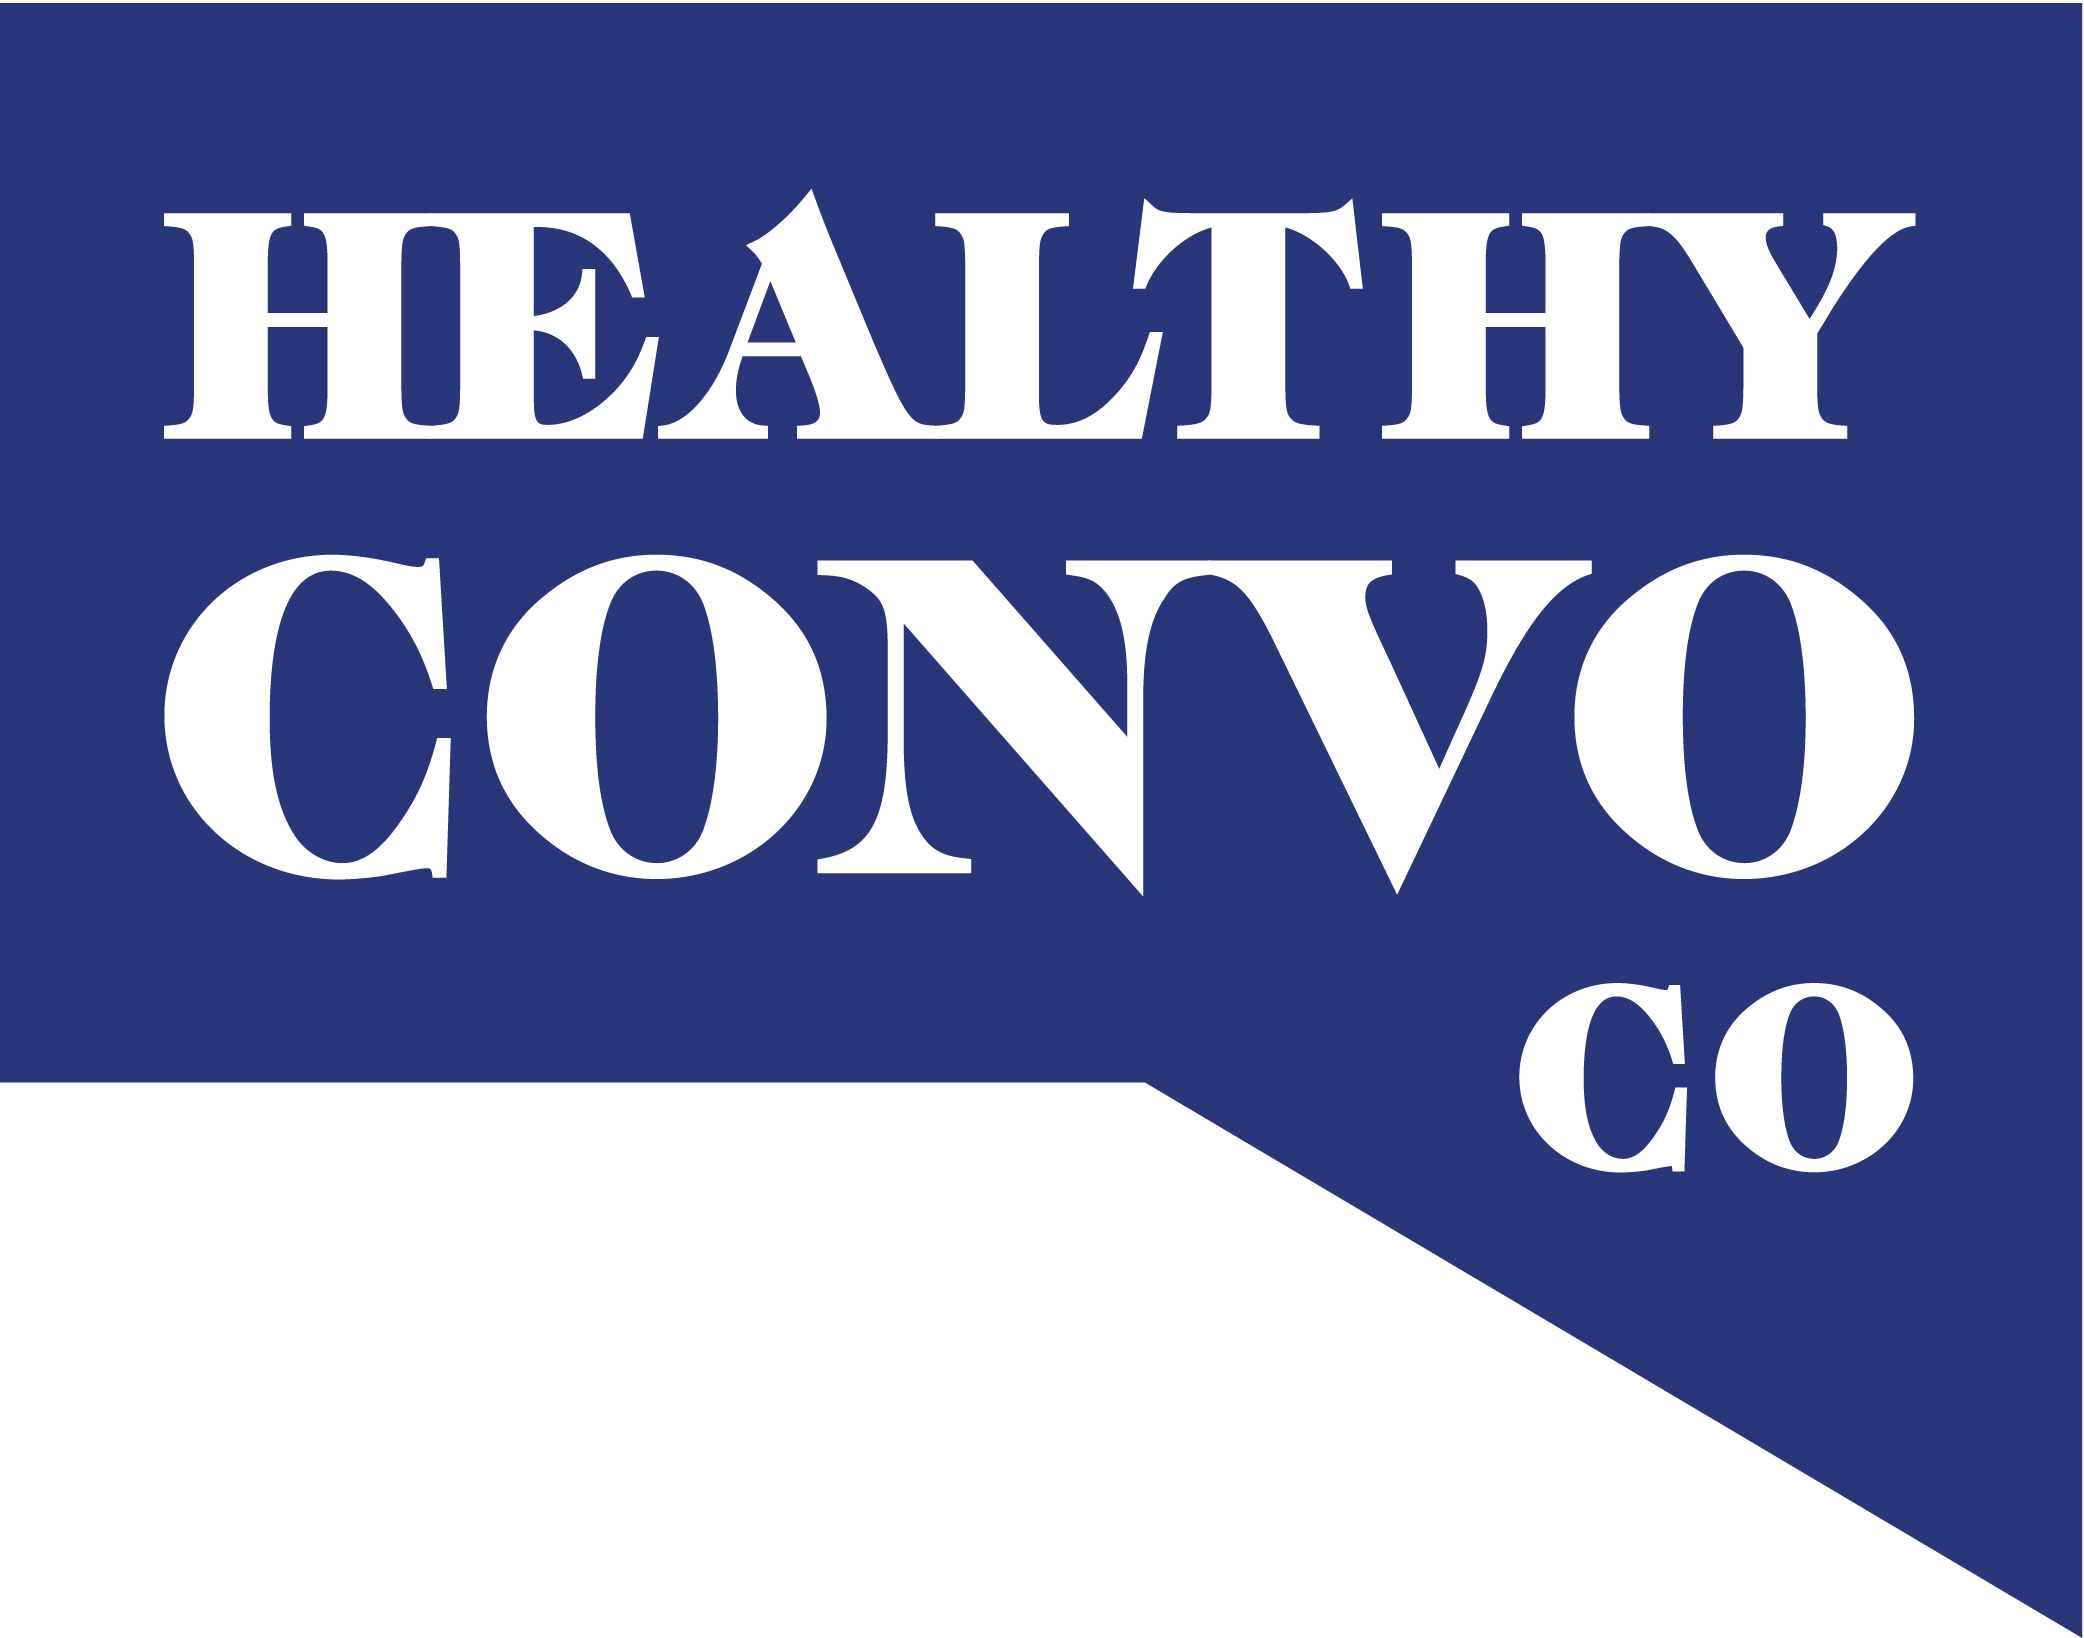 Healthy Convo Co